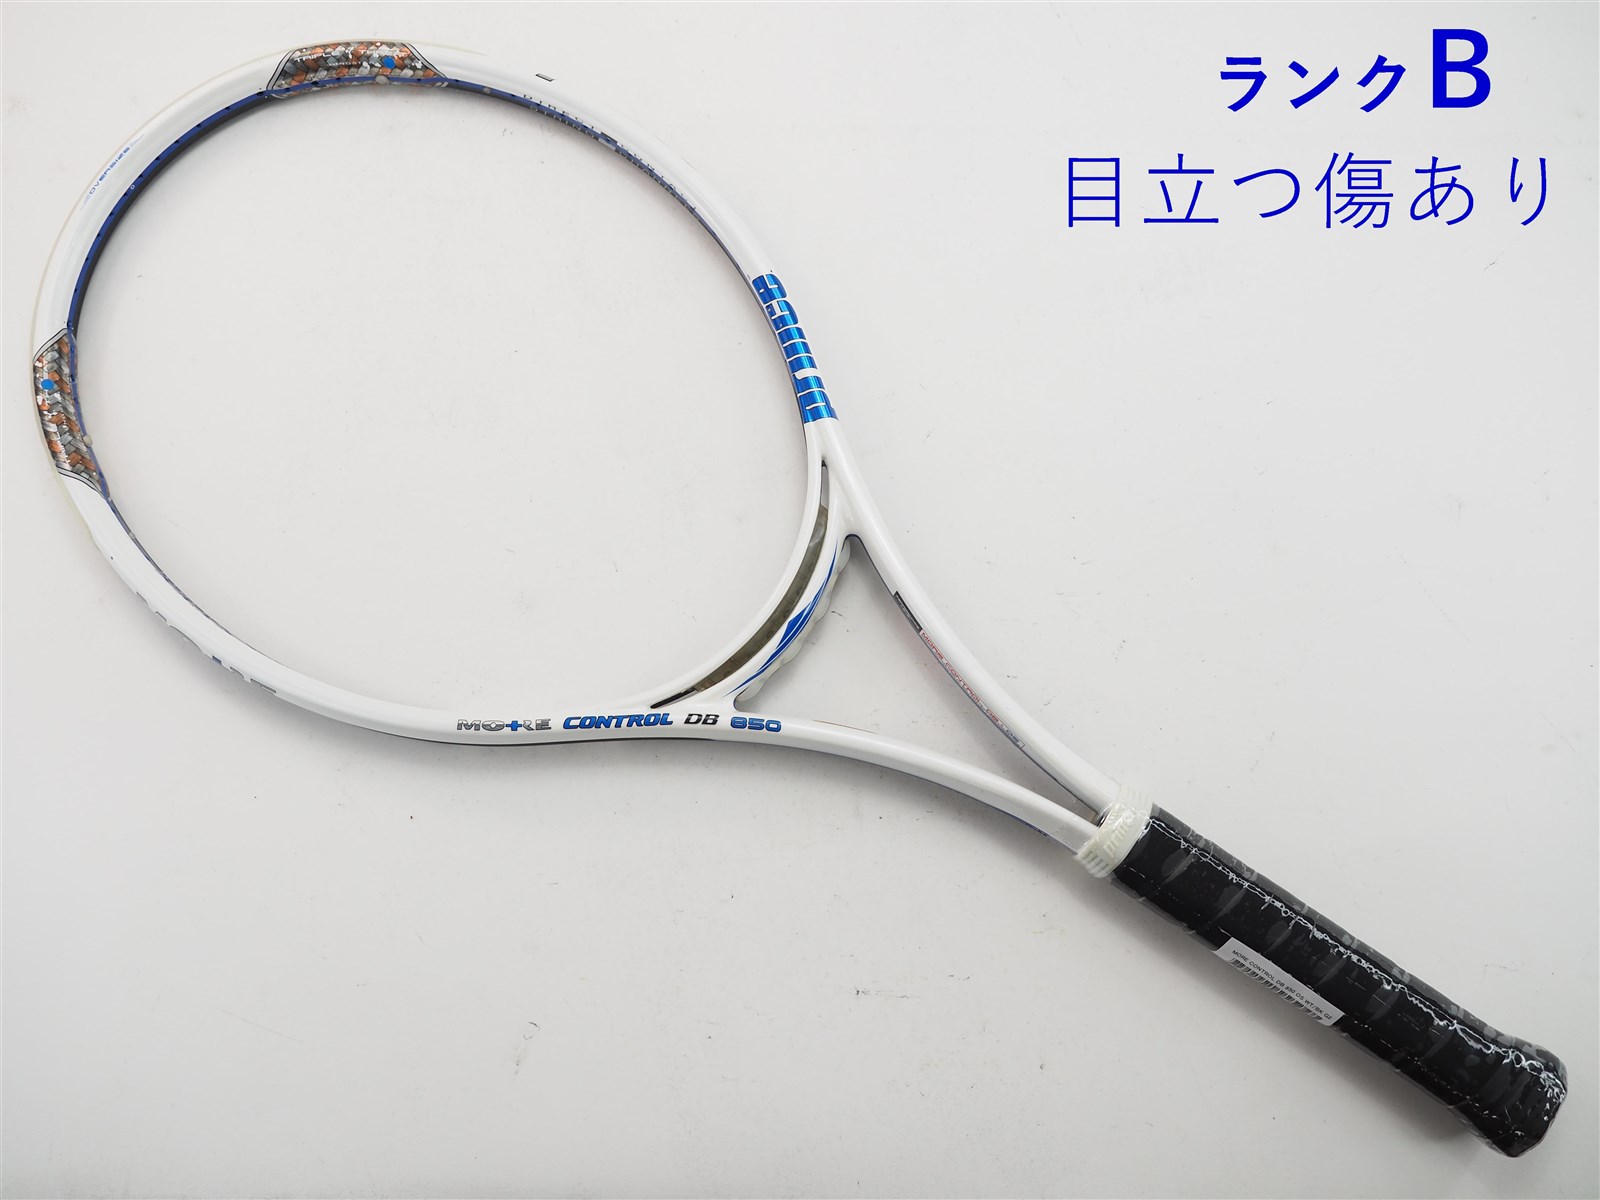 ガット無しグリップサイズテニスラケット プリンス モア コントロール DB 850 OS ホワイト/ブラック (G2)PRINCE MORE CONTROL DB 850 OS WT/BK